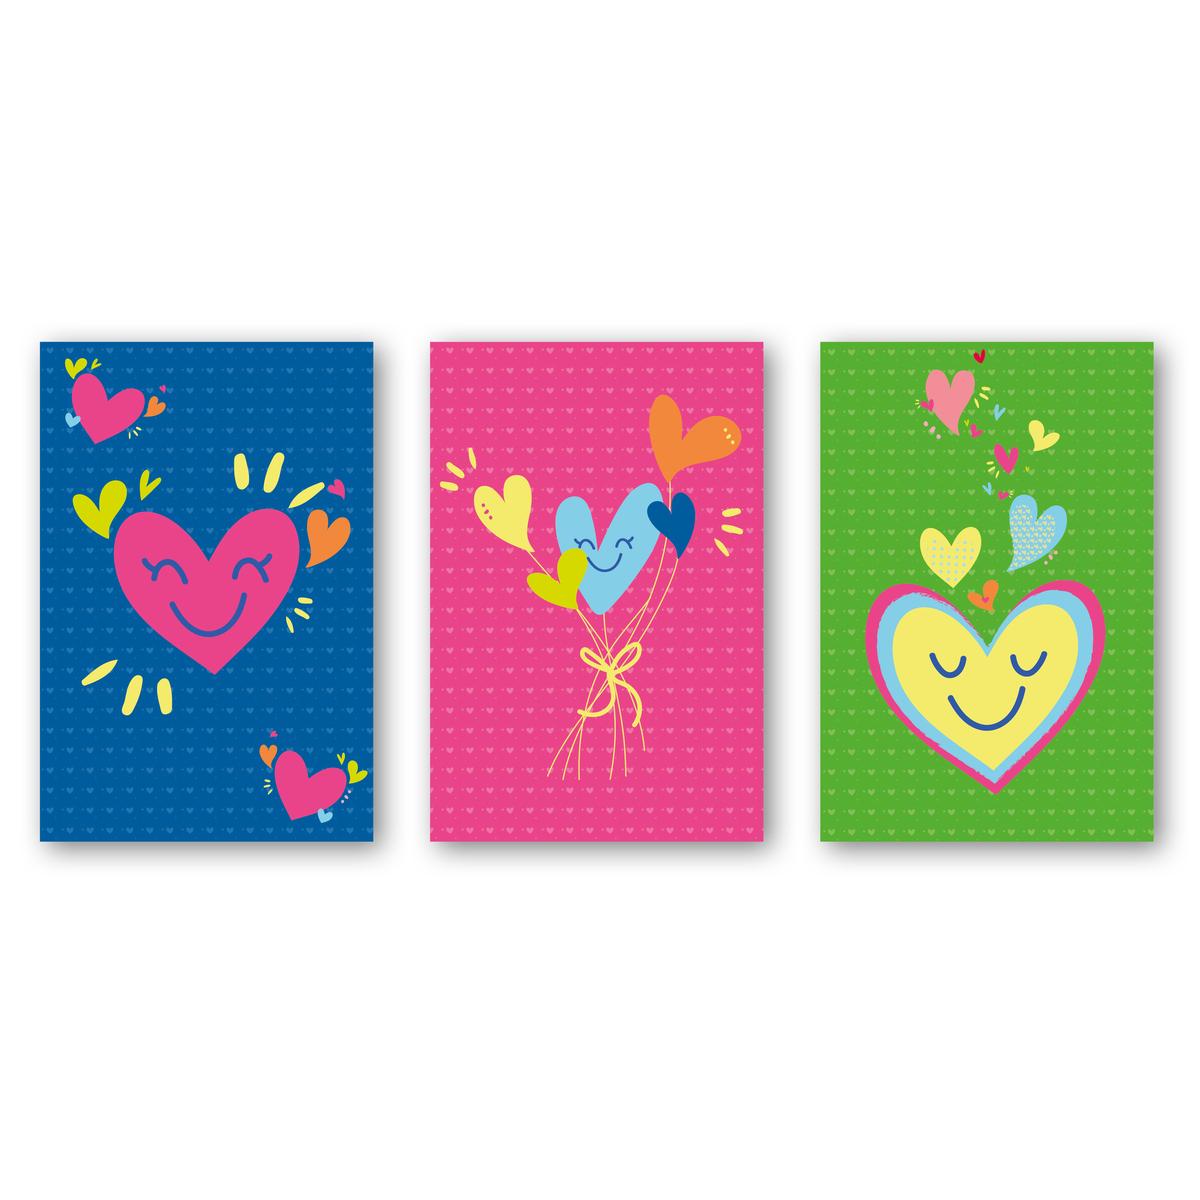 Kit cartes à gratter cœurs 2, 10 x 15 cm x 3 pcs